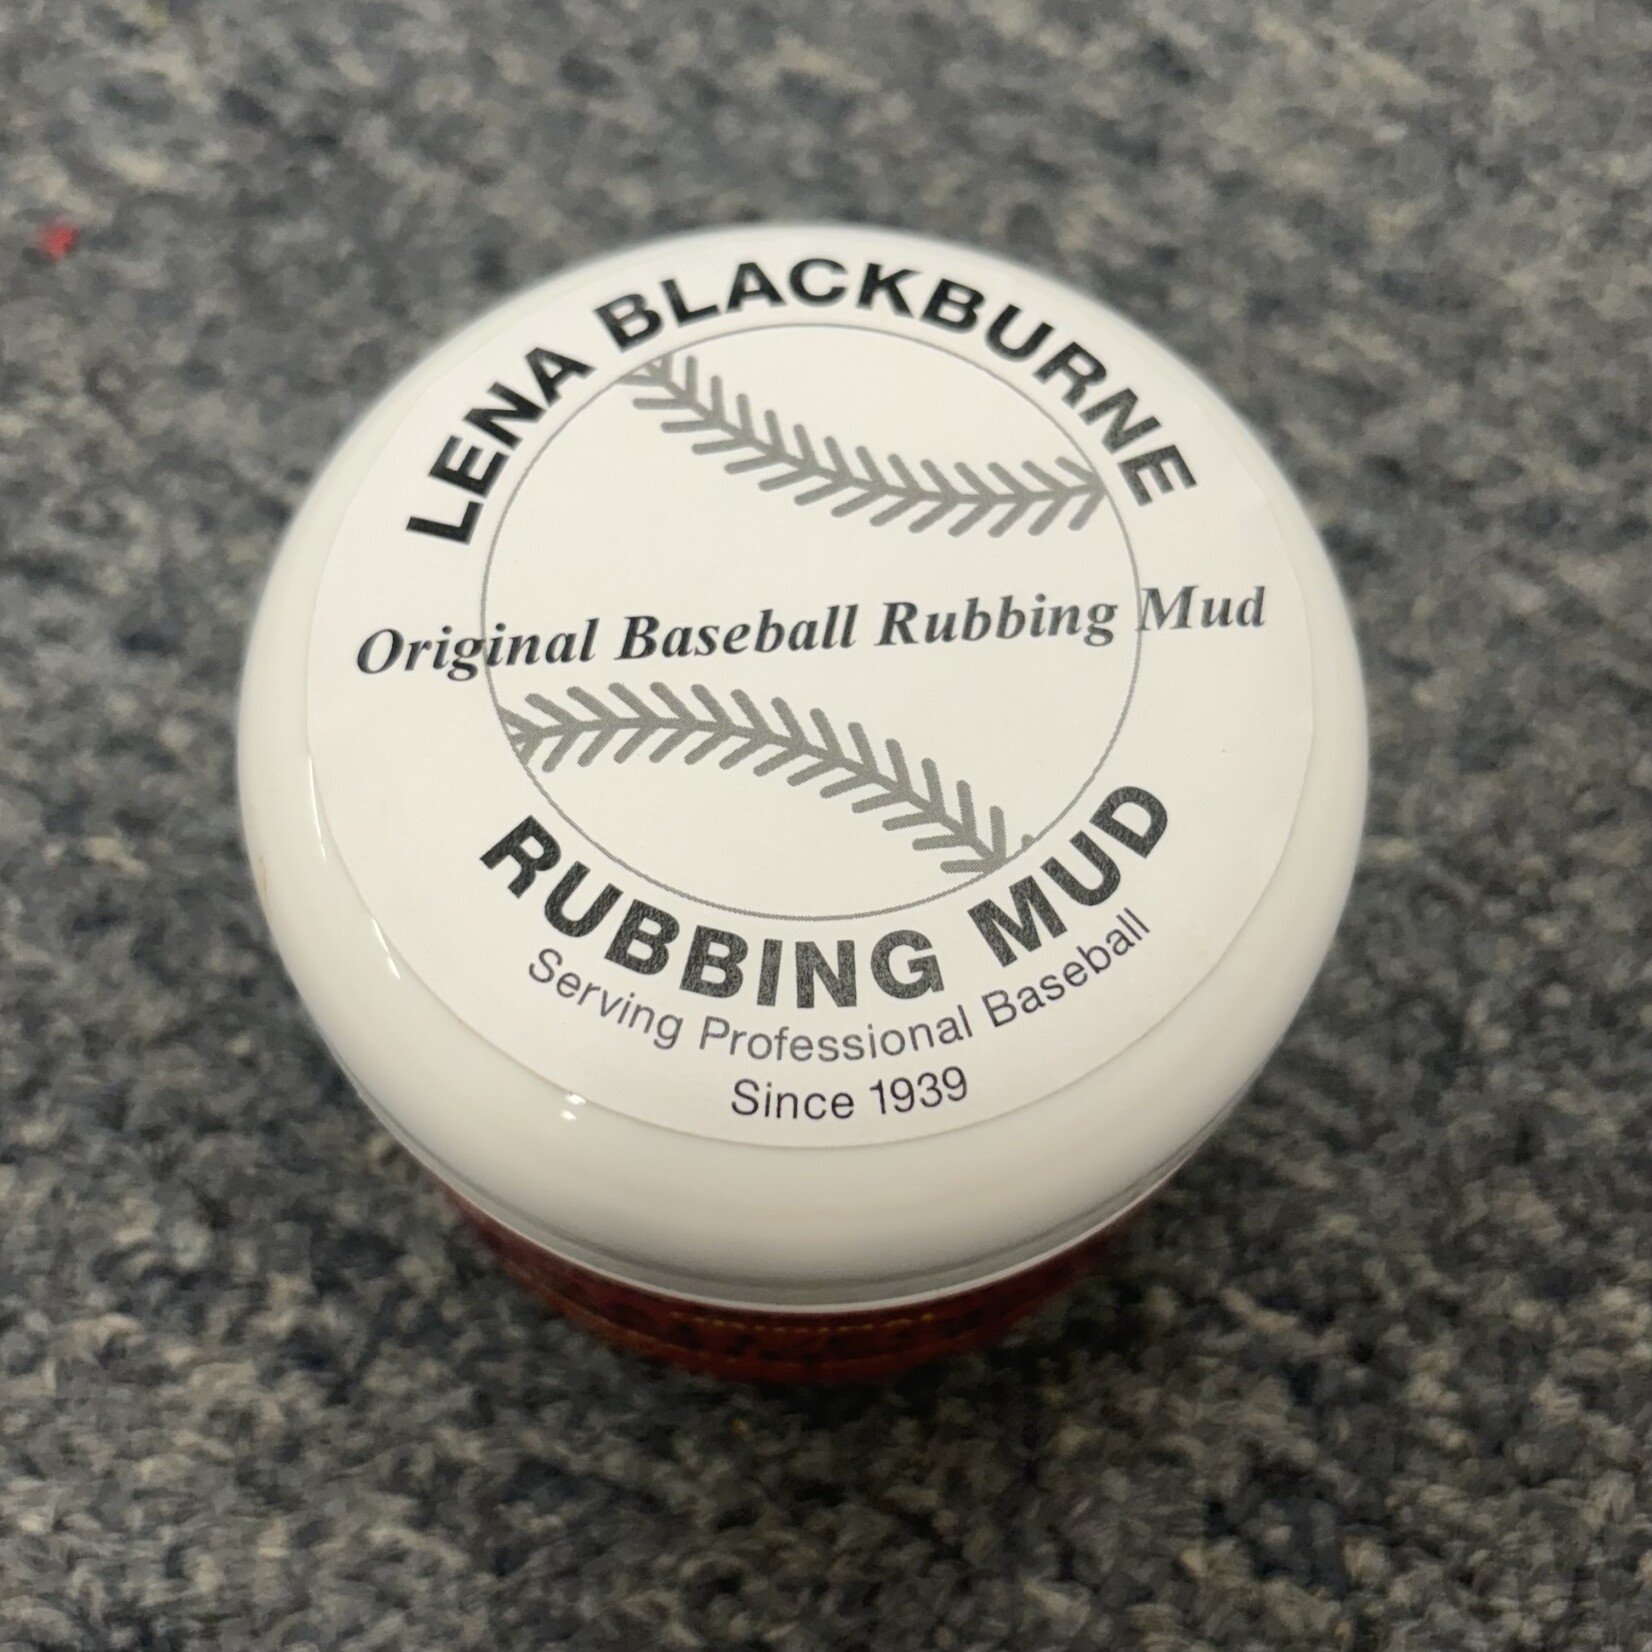 LB Rub Mud Lena Blackburne Original Baseball/Football Rubbing Mud